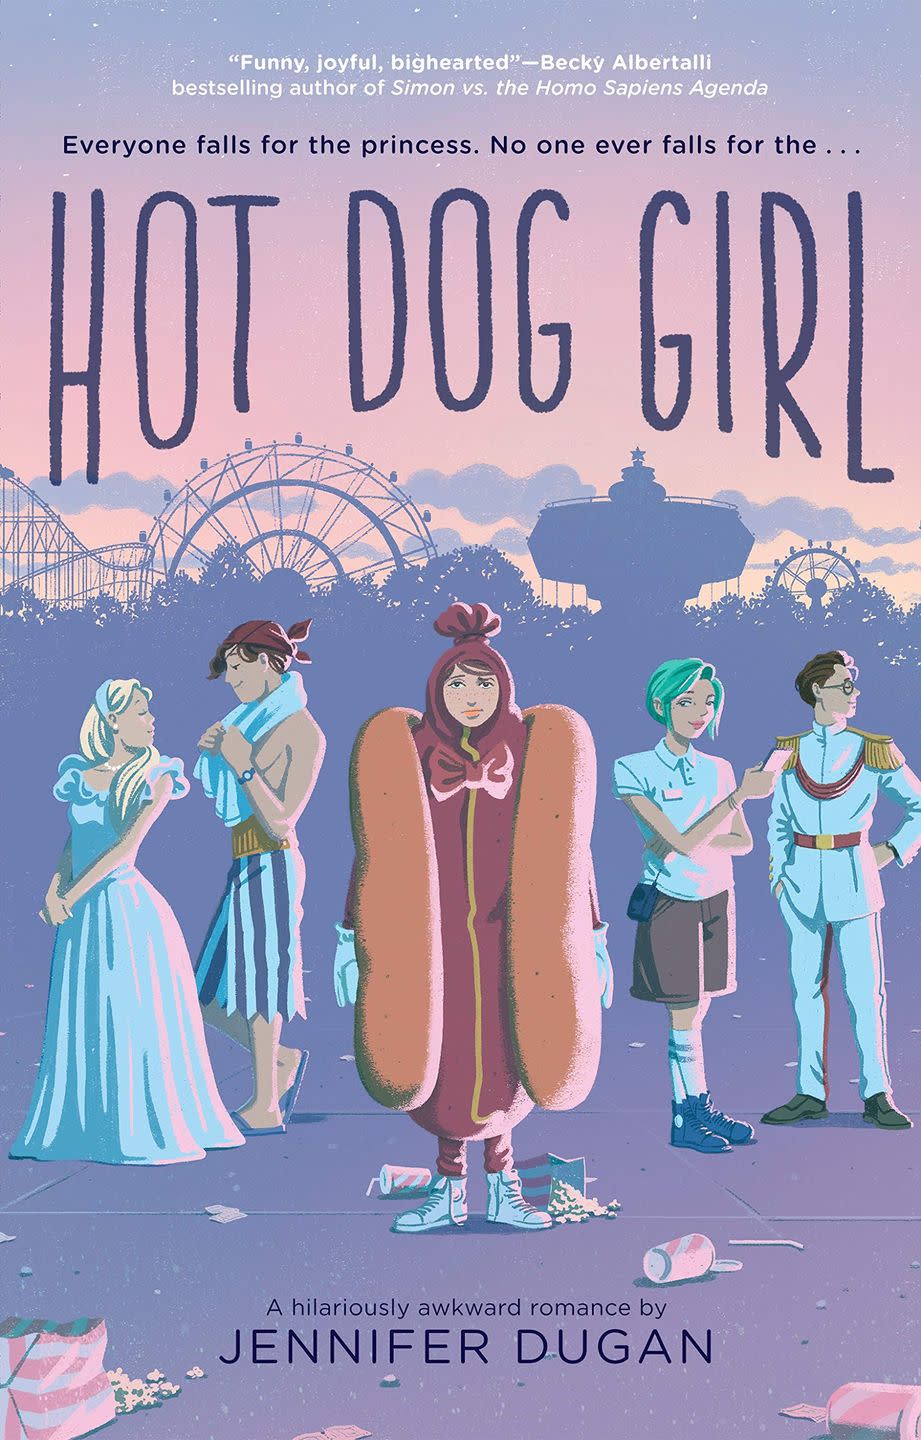 14) “Hot Dog Girl” by Jennifer Dugan